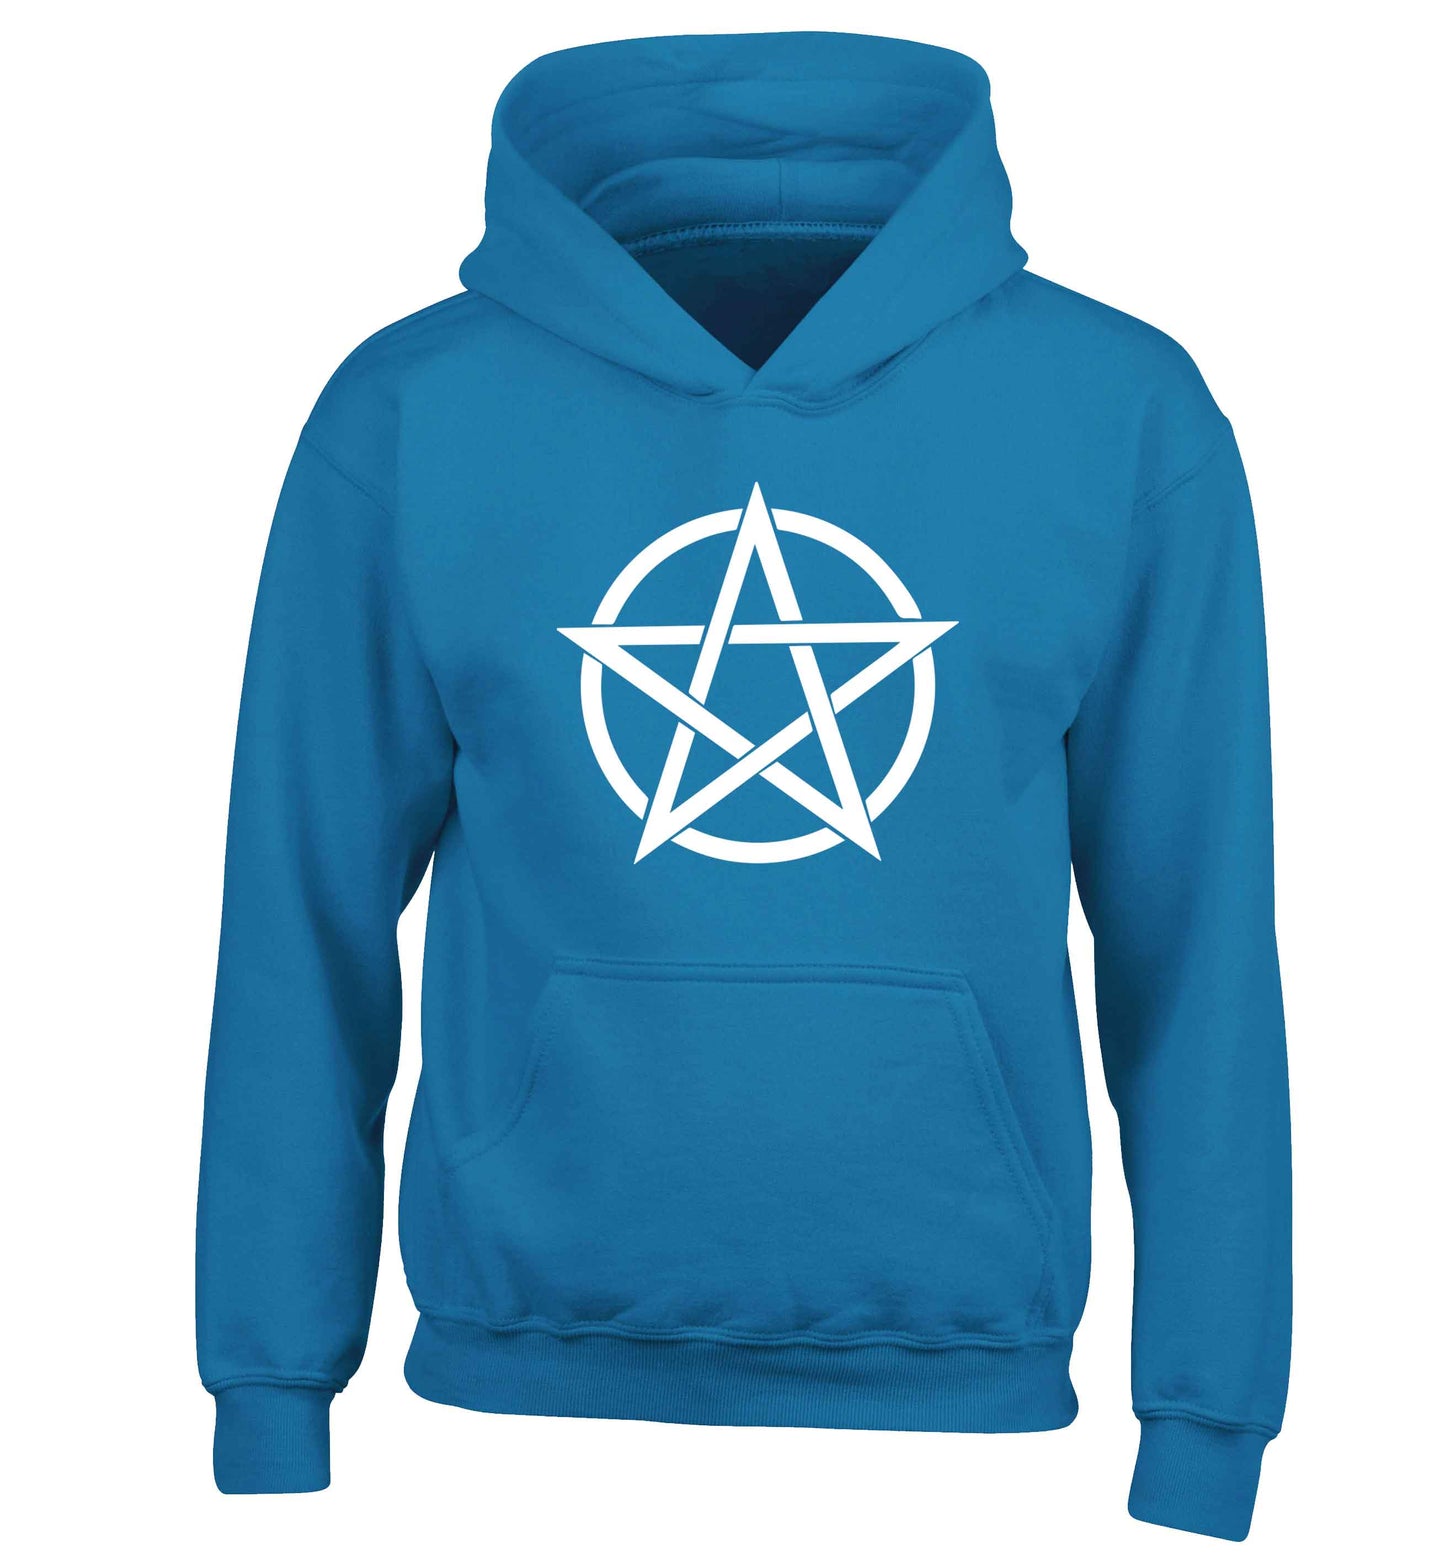 Pentagram symbol children's blue hoodie 12-13 Years